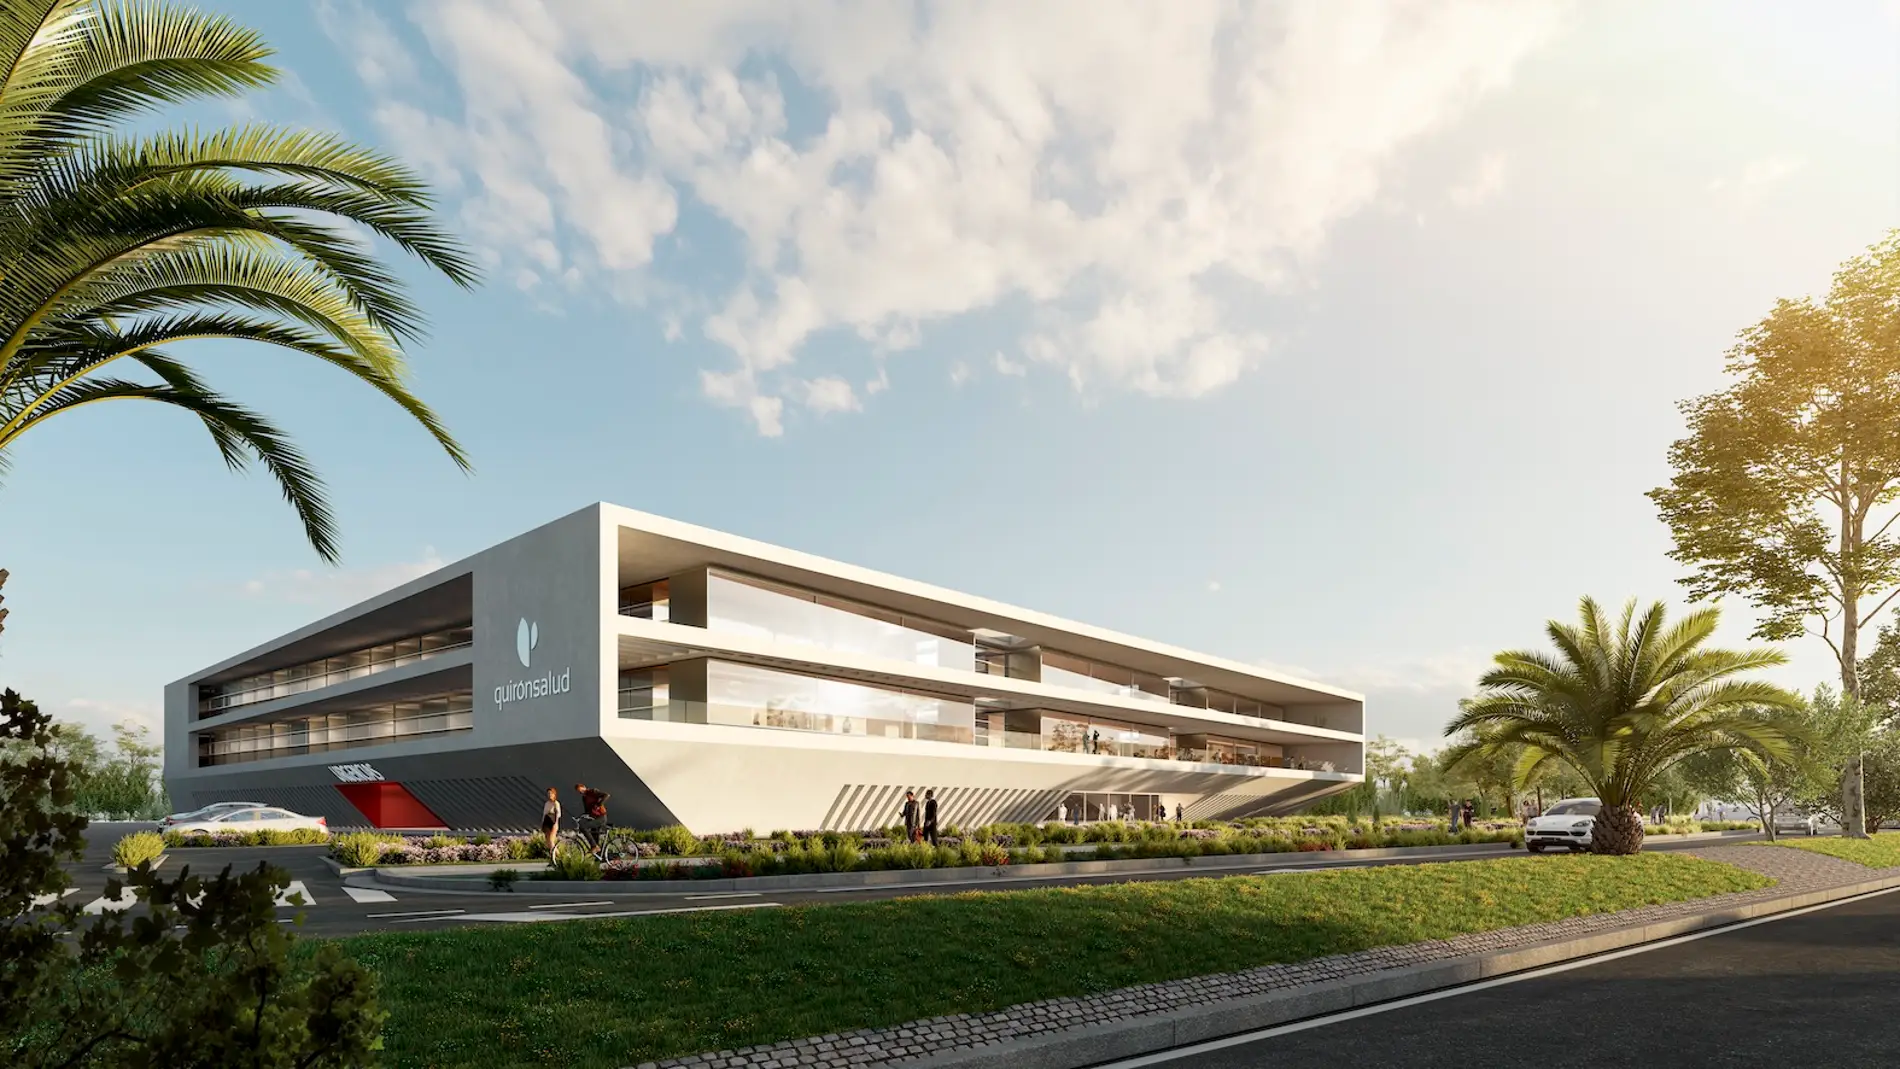 El nuevo Hospital Quironsalud Clideba contará con un diseño innovador, sostenible y adaptado a las necesidades de sus pacientes